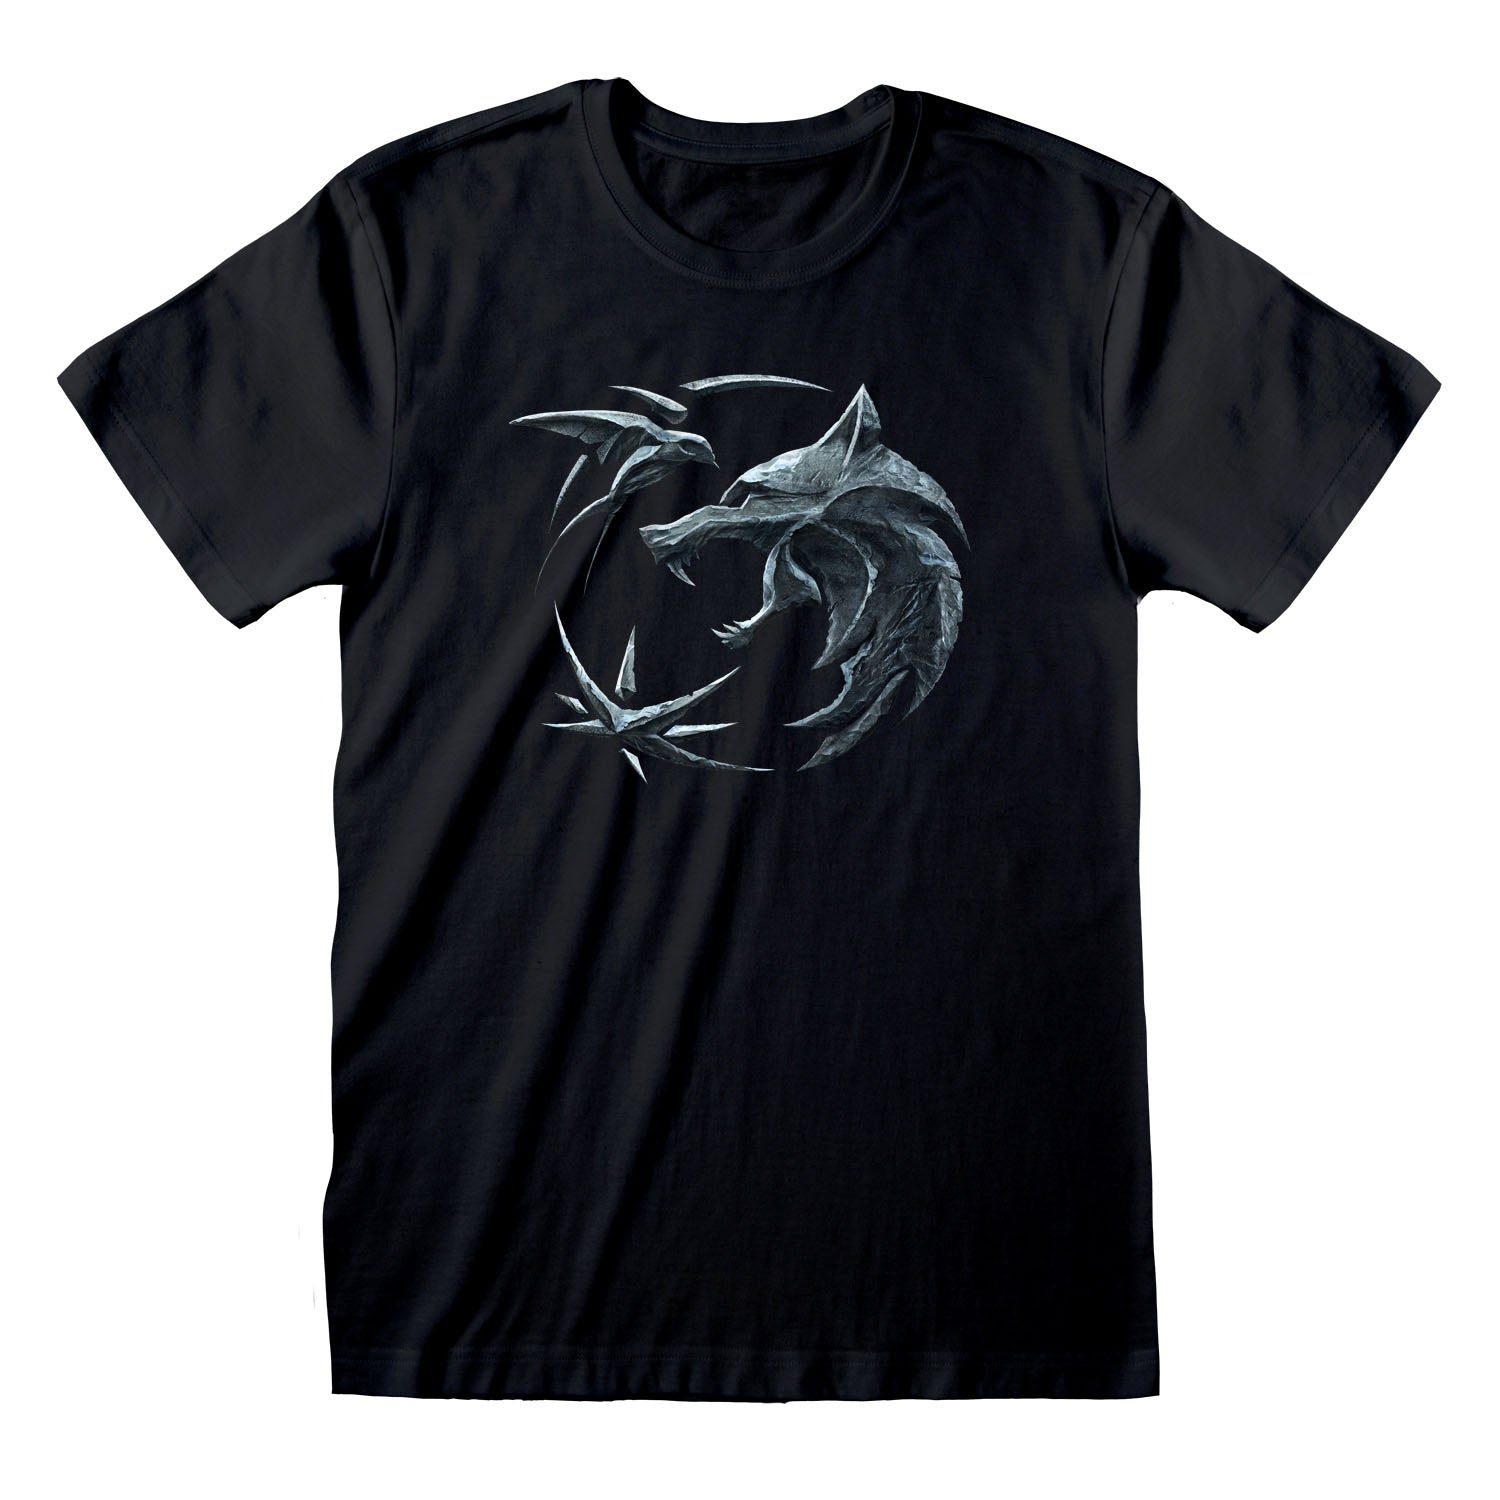 The Witcher Emblem T-Shirt